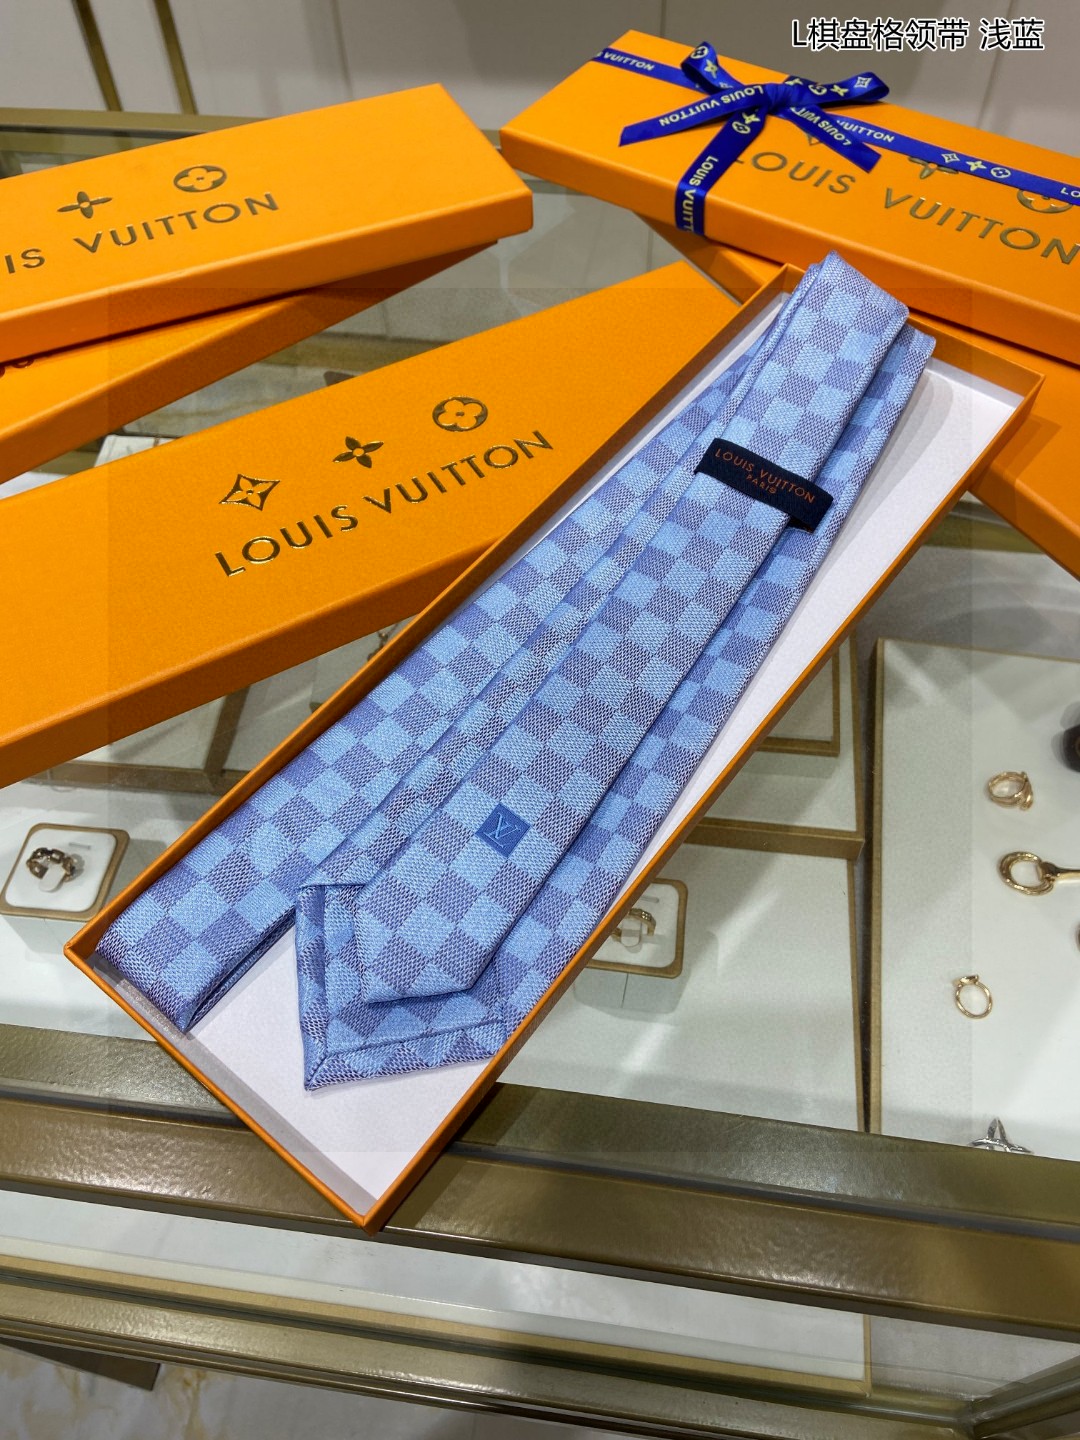 男士领带系列L棋盘格领带稀有展现精湛手工与时尚优雅的理想选择这款领带将标志性的路易威登Damier图案以